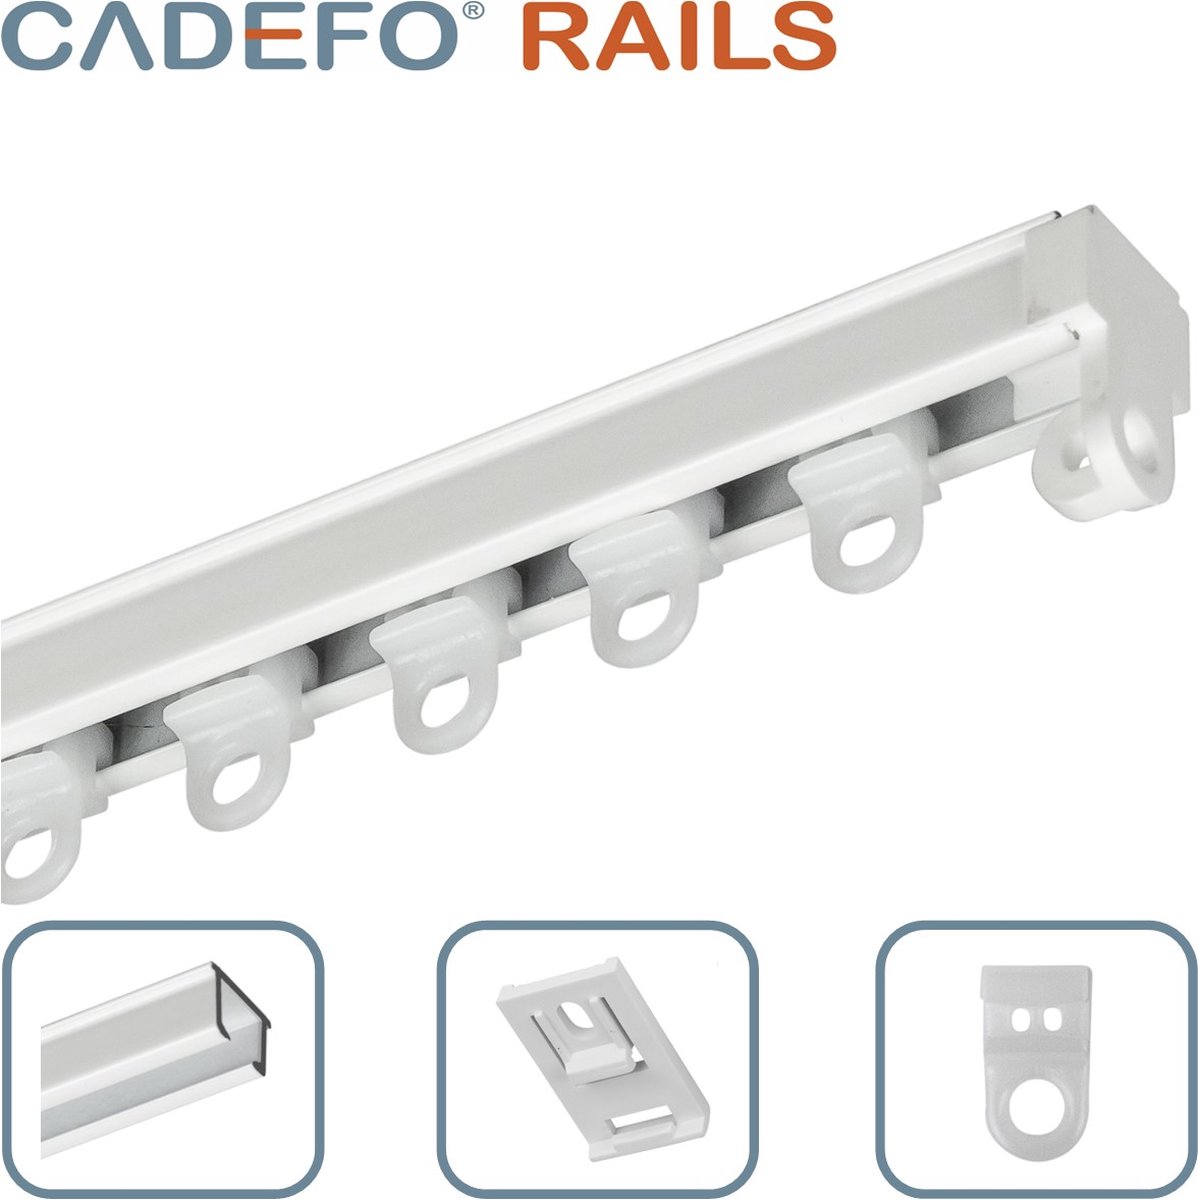 CADEFO RAILS (201 - 250 cm) Gordijnrails - Compleet op maat! - UIT 1 STUK - Leverbaar tot 6 meter - Plafondbevestiging - Lengte 241 cm